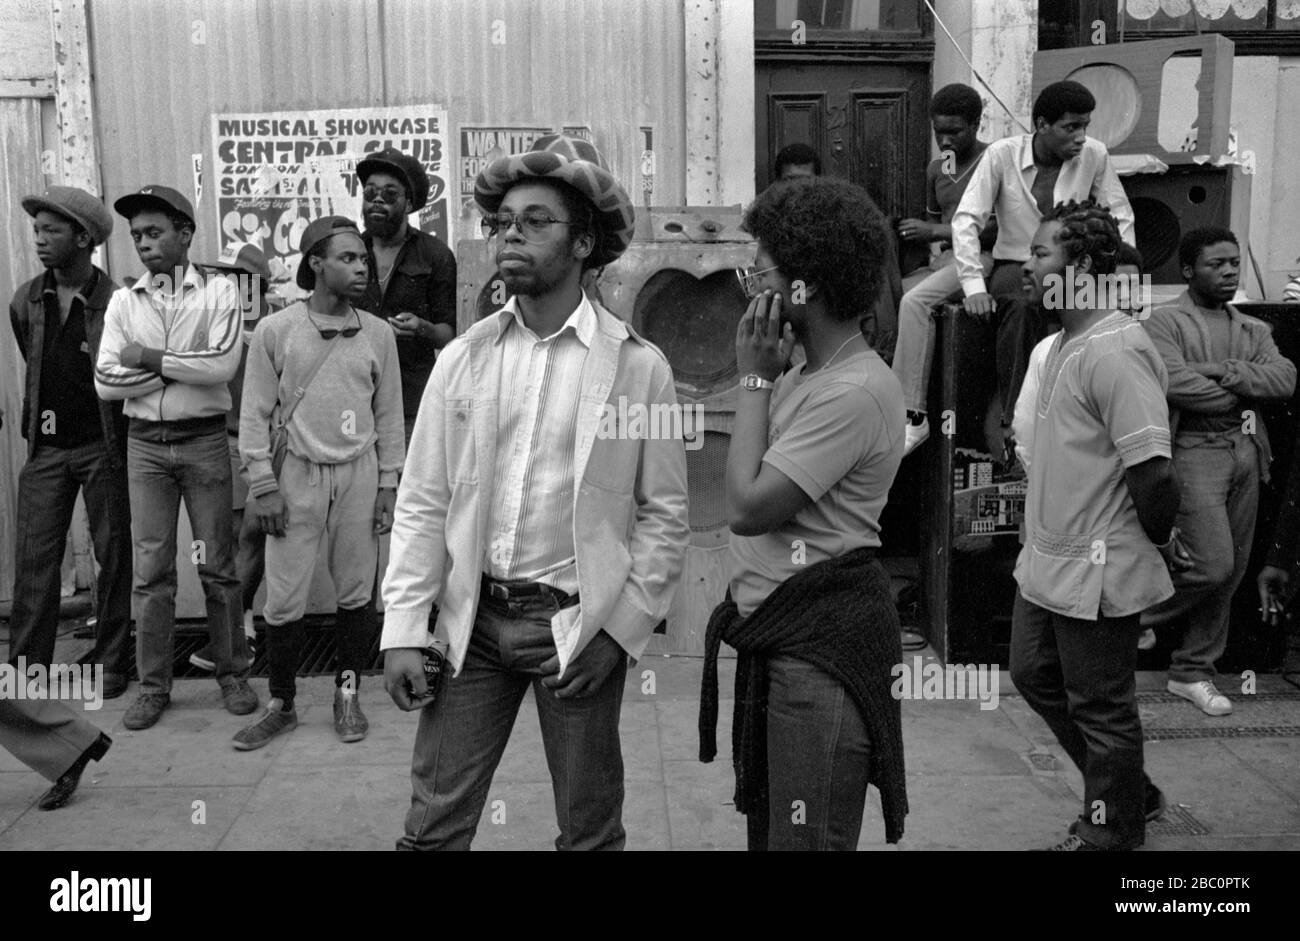 Des adolescents britanniques noirs des années 1980 au Royaume-Uni traînaient autour d'un Reggae Système sonore Notting Hill Carnival 1981 England HOMER SYKES Banque D'Images